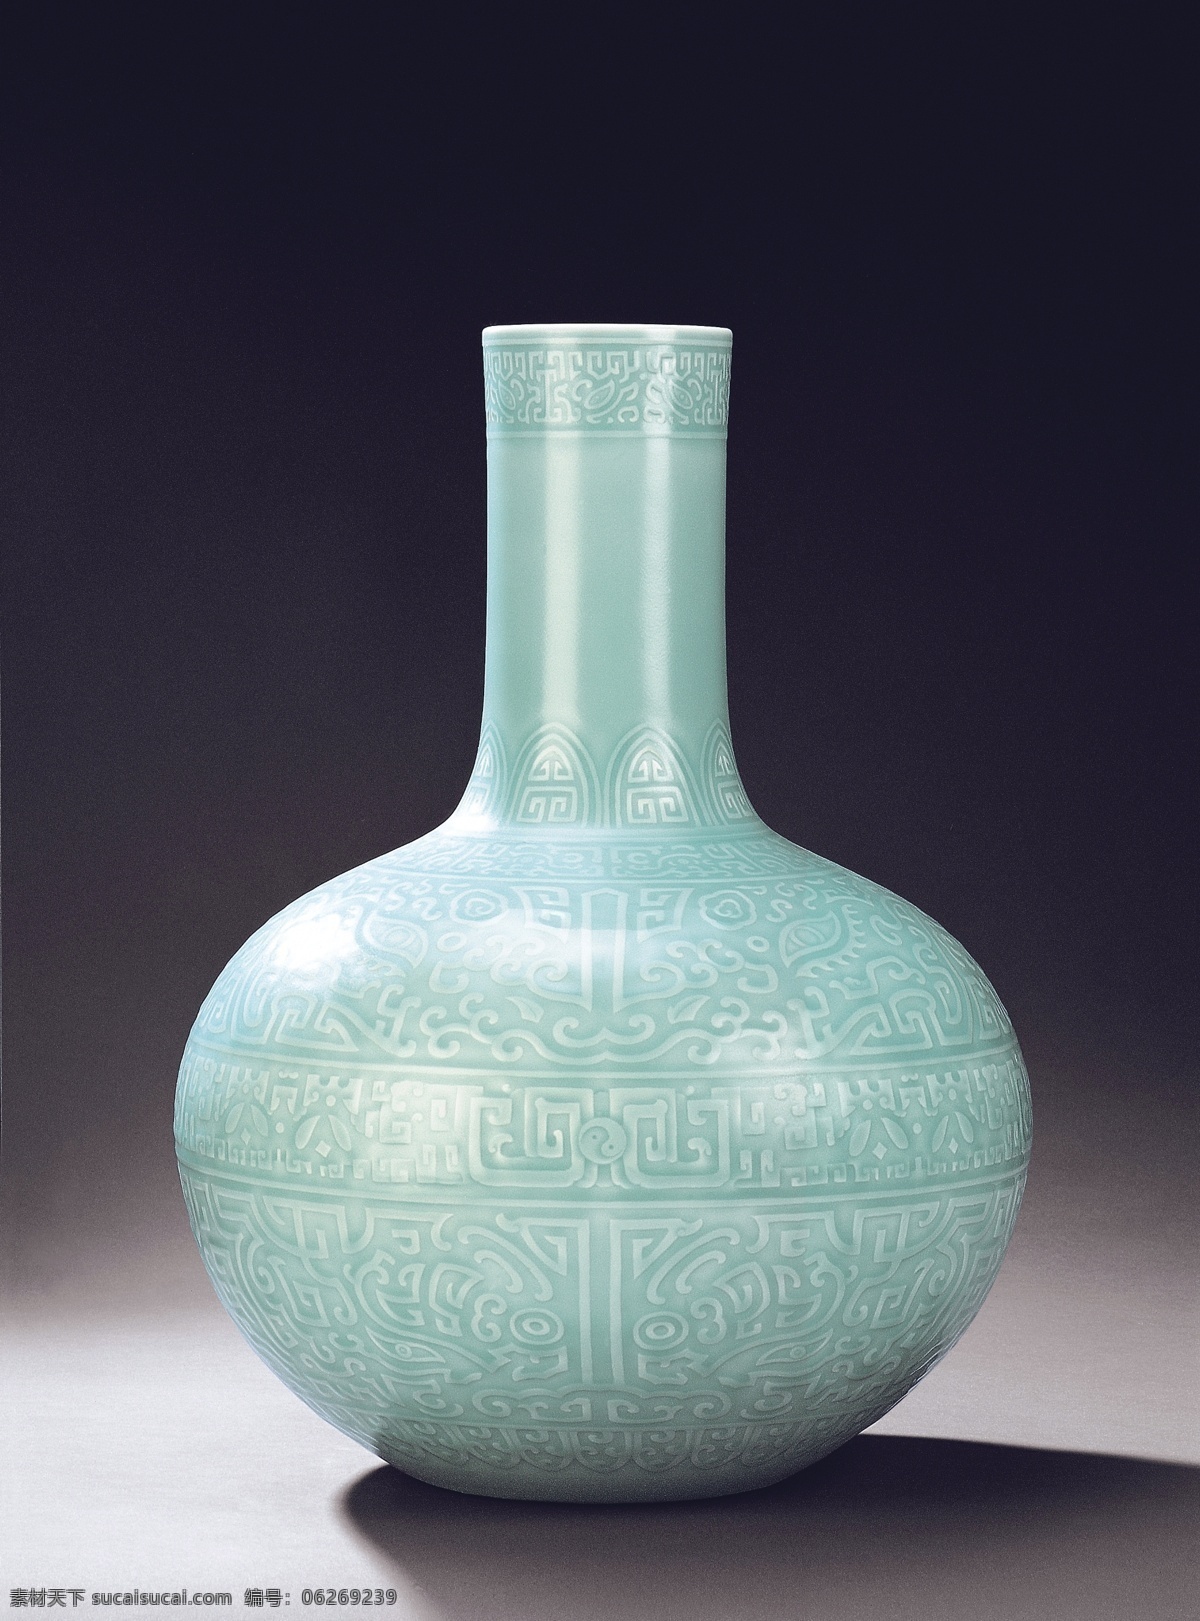 瓷瓶 陶瓷 青玉 传统文化 文化艺术